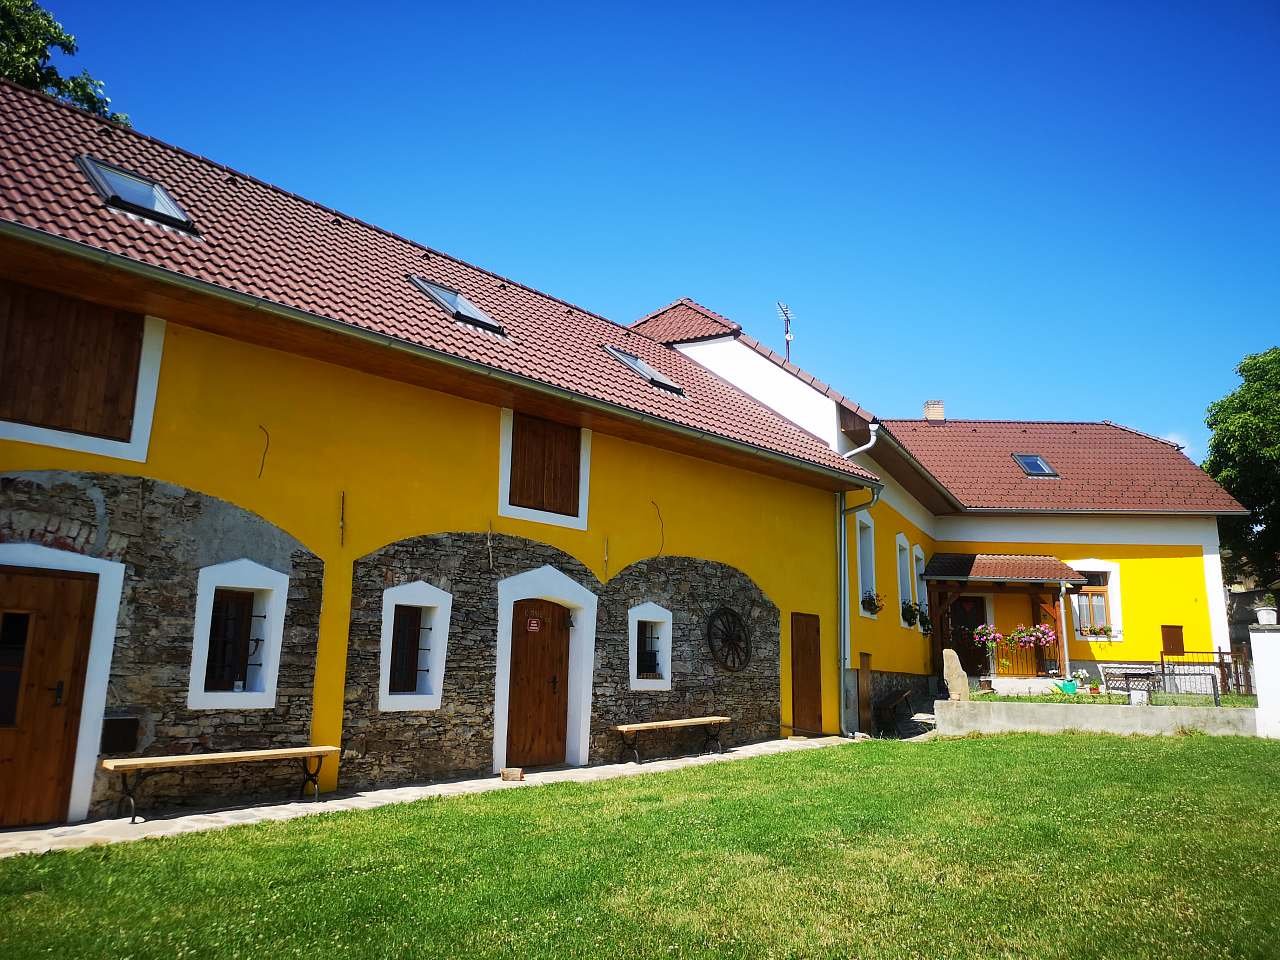 Ferienhaus in der Nähe von Prokůpka zu vermieten Želeč in Südböhmen